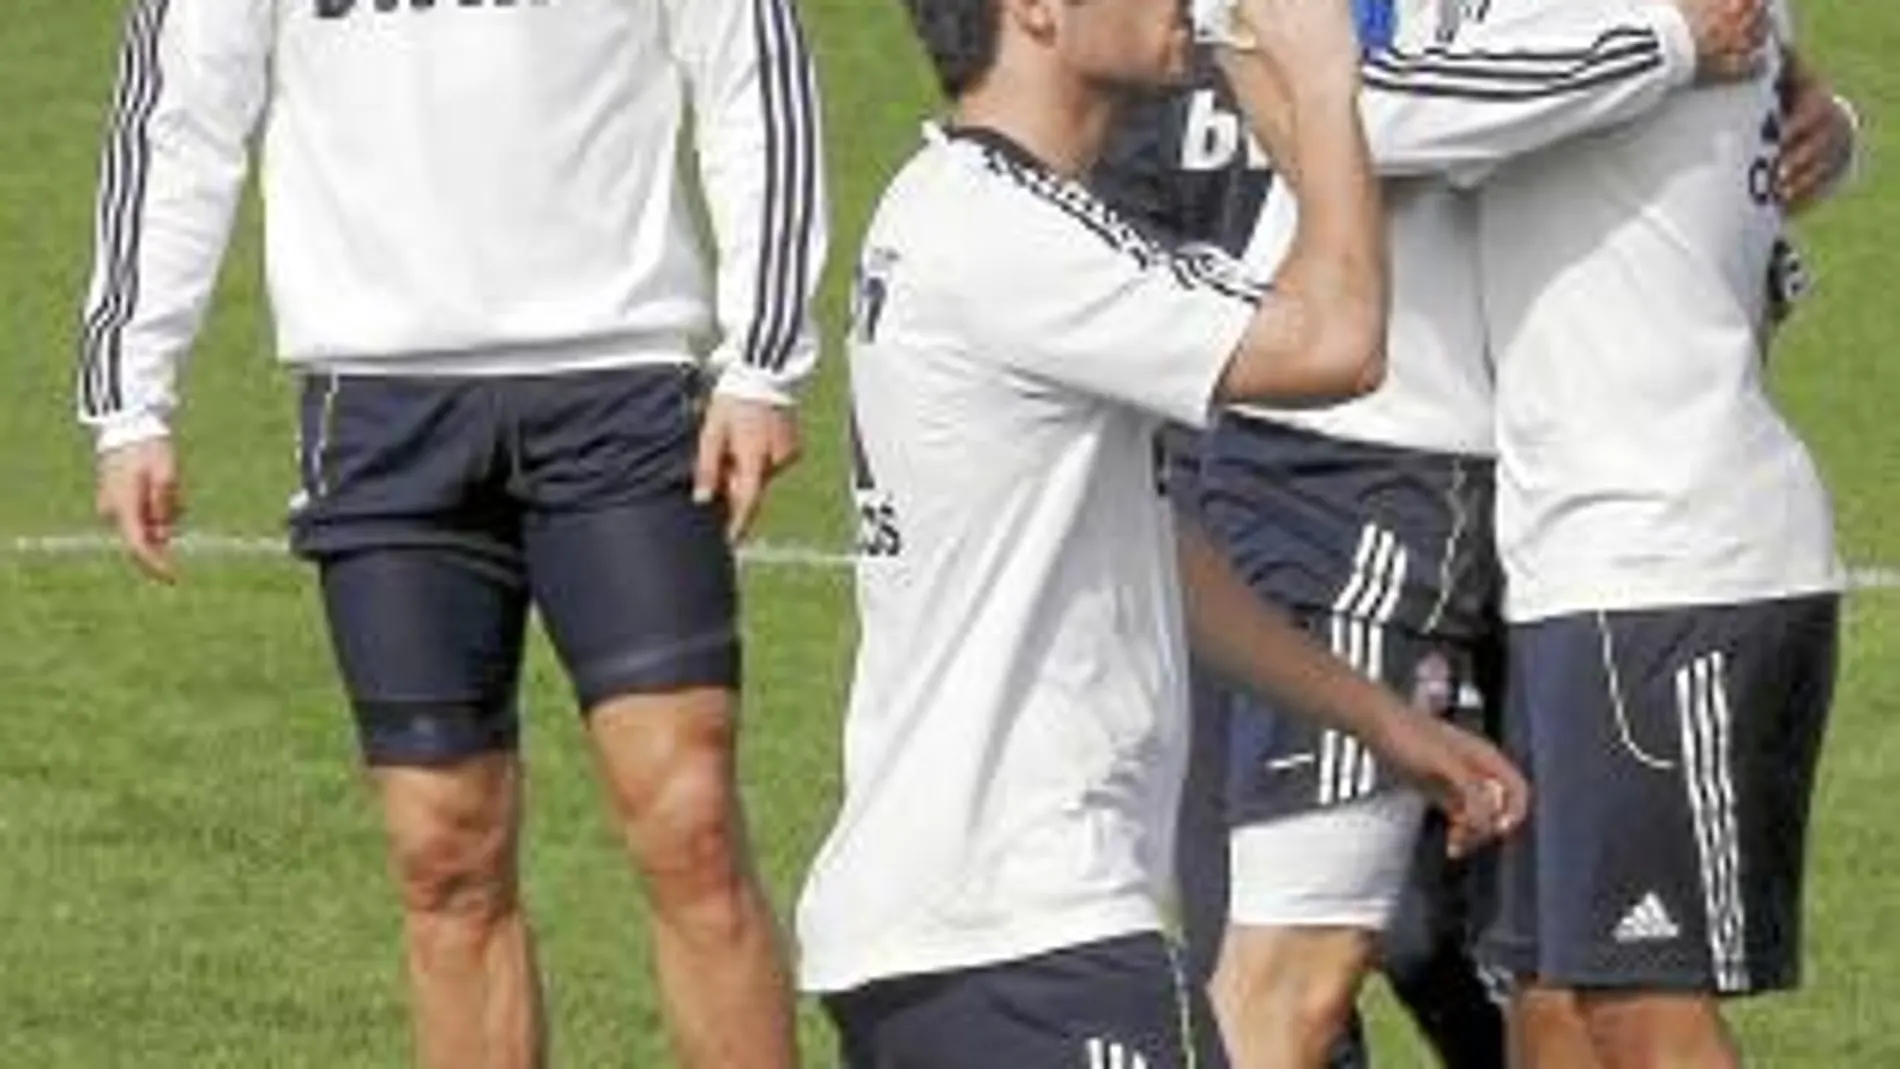 Cristiano Ronaldo en un entrenamiento del Real Madrid junto a sus compañeros Marcelo, Benzema e Higuaín